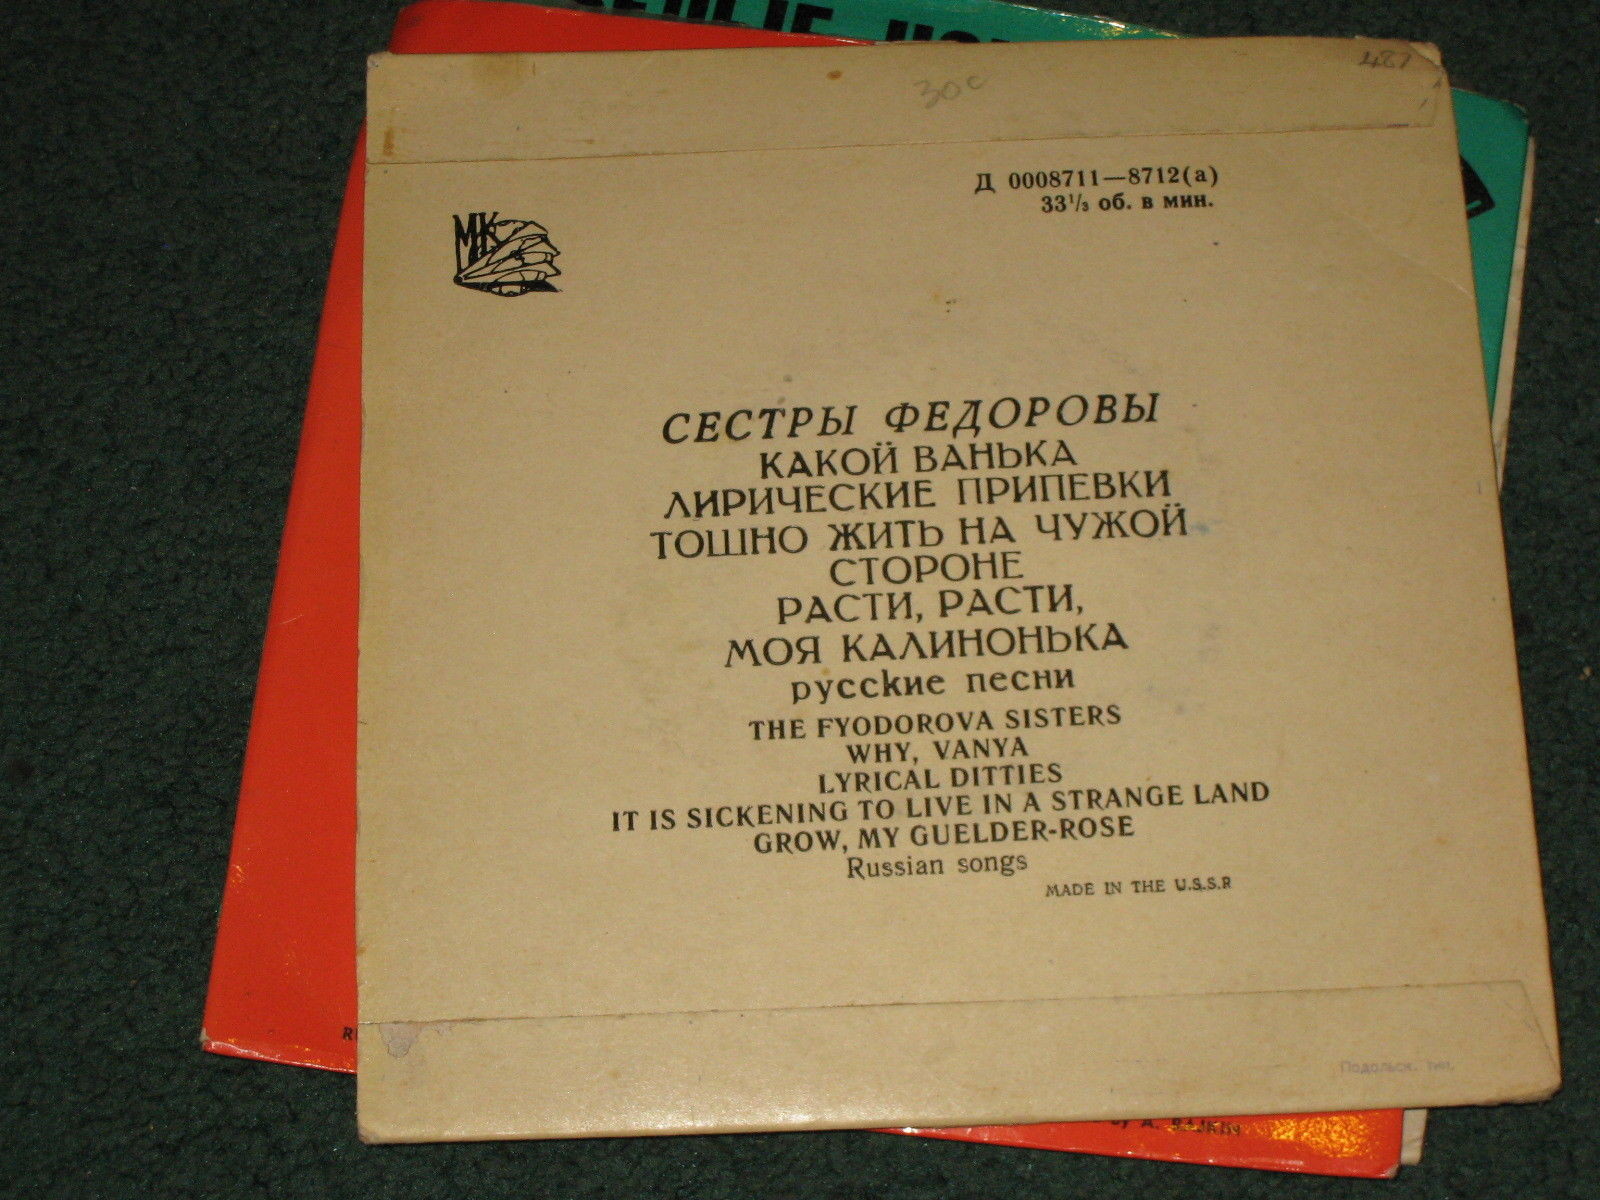 Сестры ФЕДОРОВЫ. Русские песни